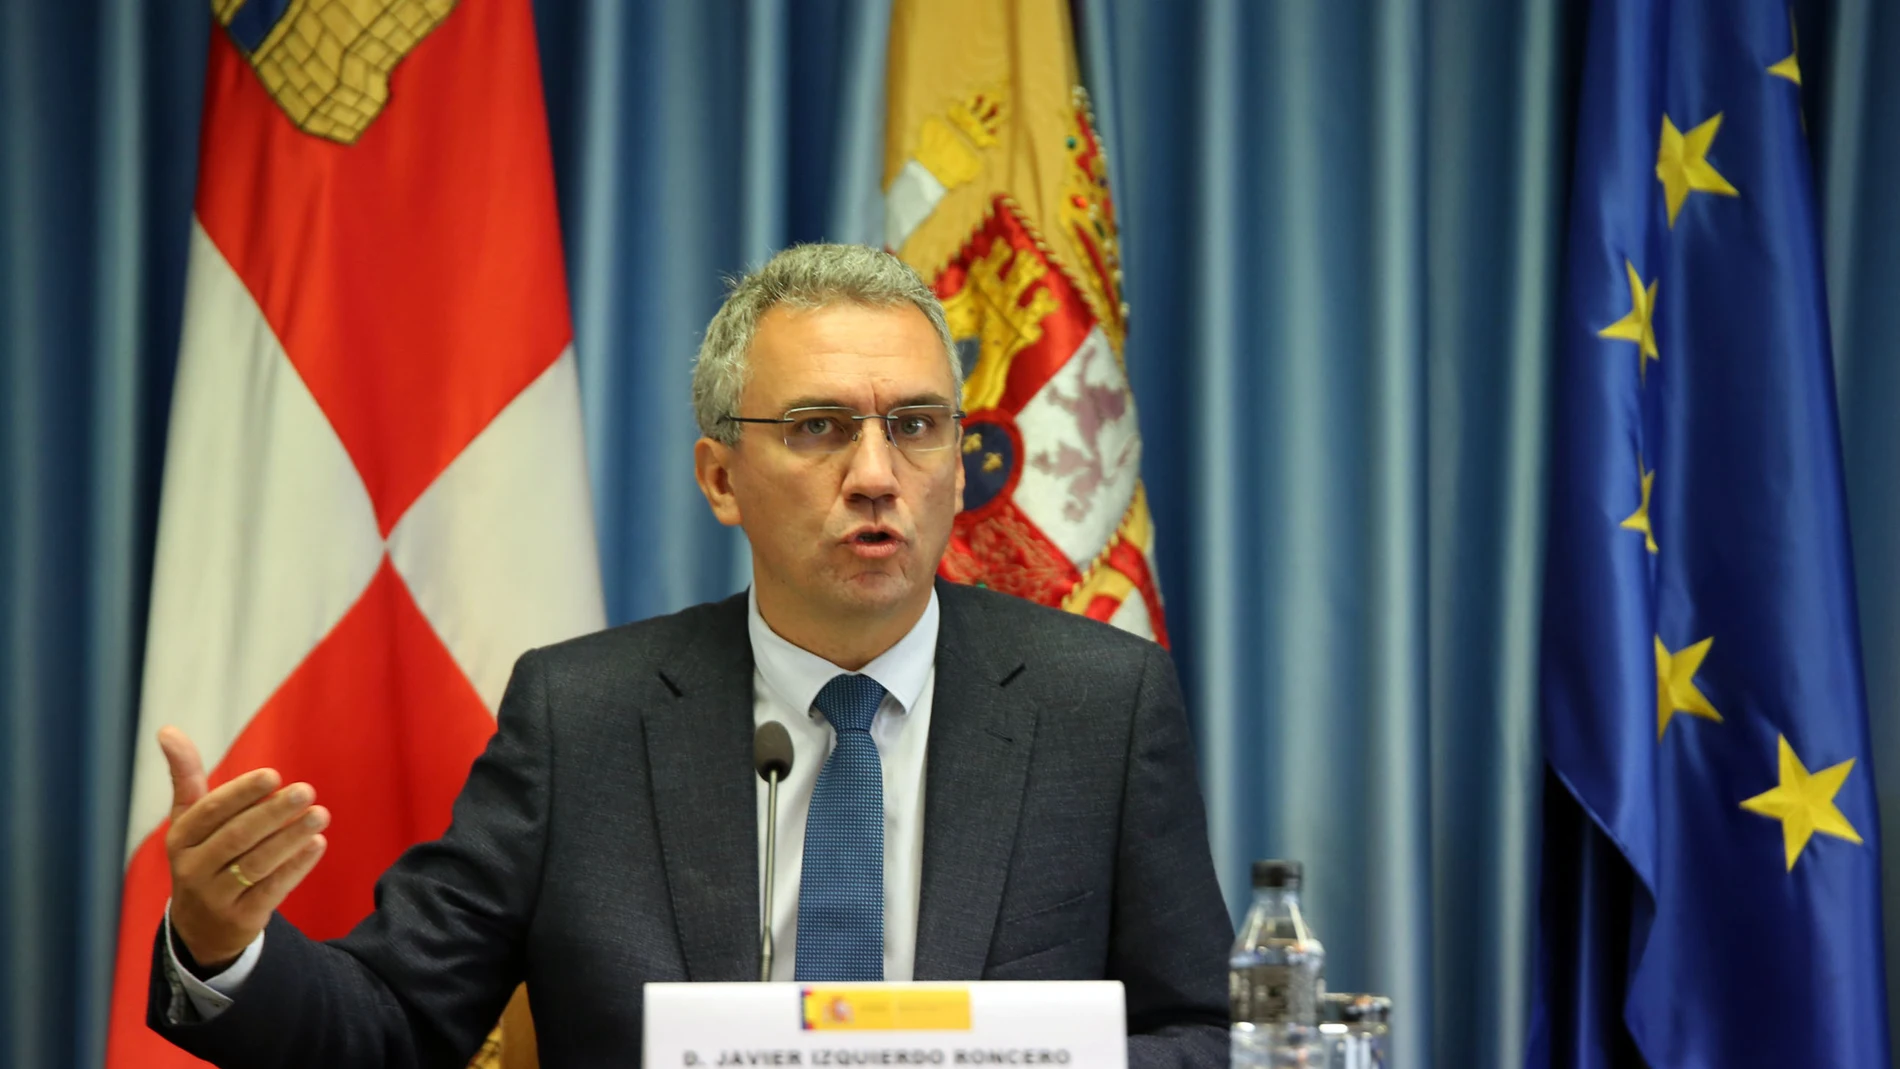 El delegado del Gobierno en Castilla y León, Javier Izquierdo, ofrece los últimos datos sobre las medidas económicas adoptadas por el Gobierno en la Comunidad en relación con la crisis